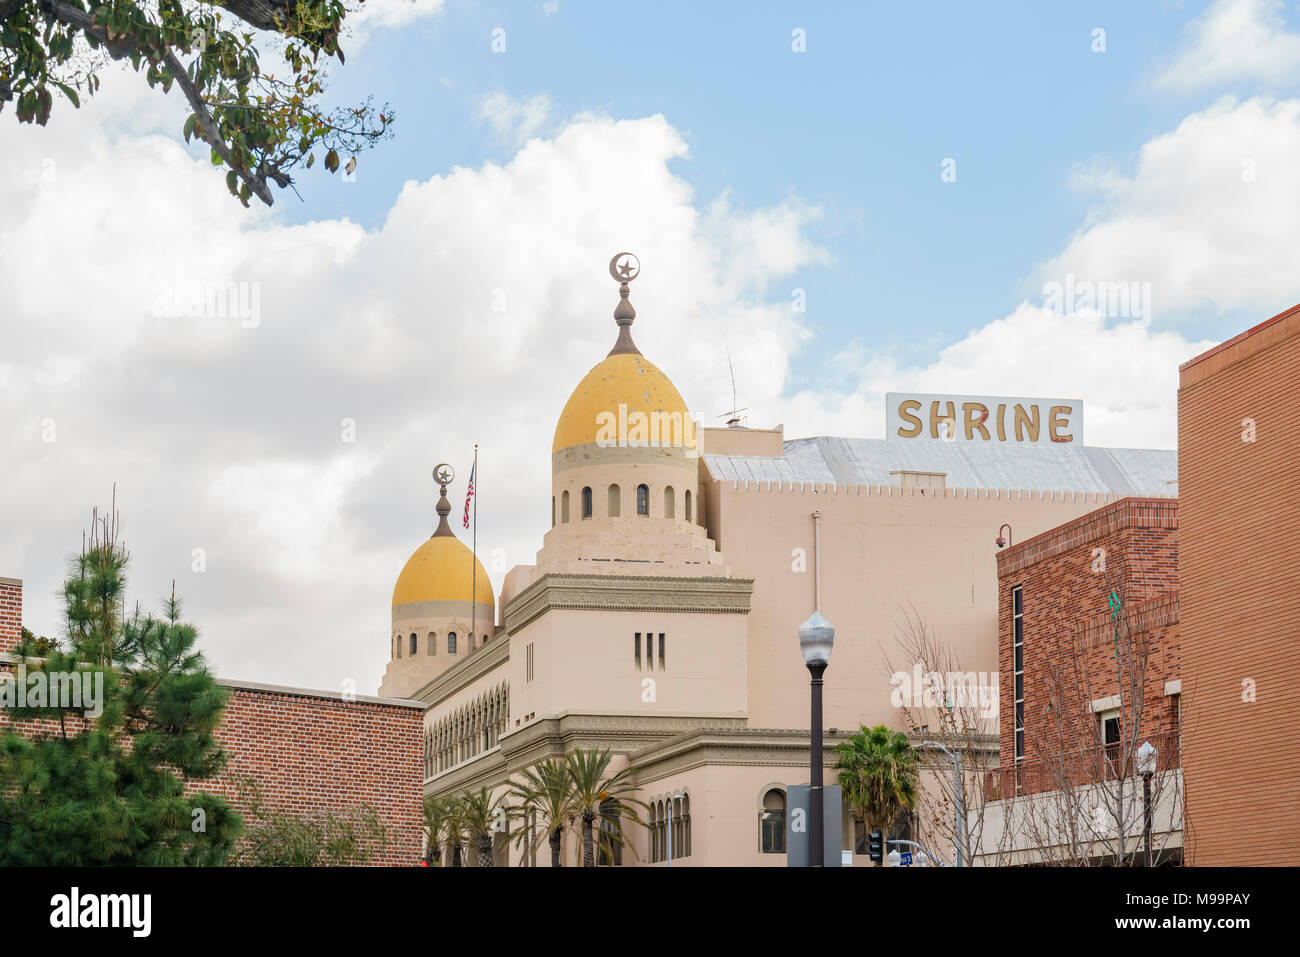 Los Angeles, MAR 16 : Vue extérieure de la belle Shrine Auditorium et Expo Hall bâtiment près de l'USC le Mar 16, 2018 à Los Angeles, Californie Banque D'Images